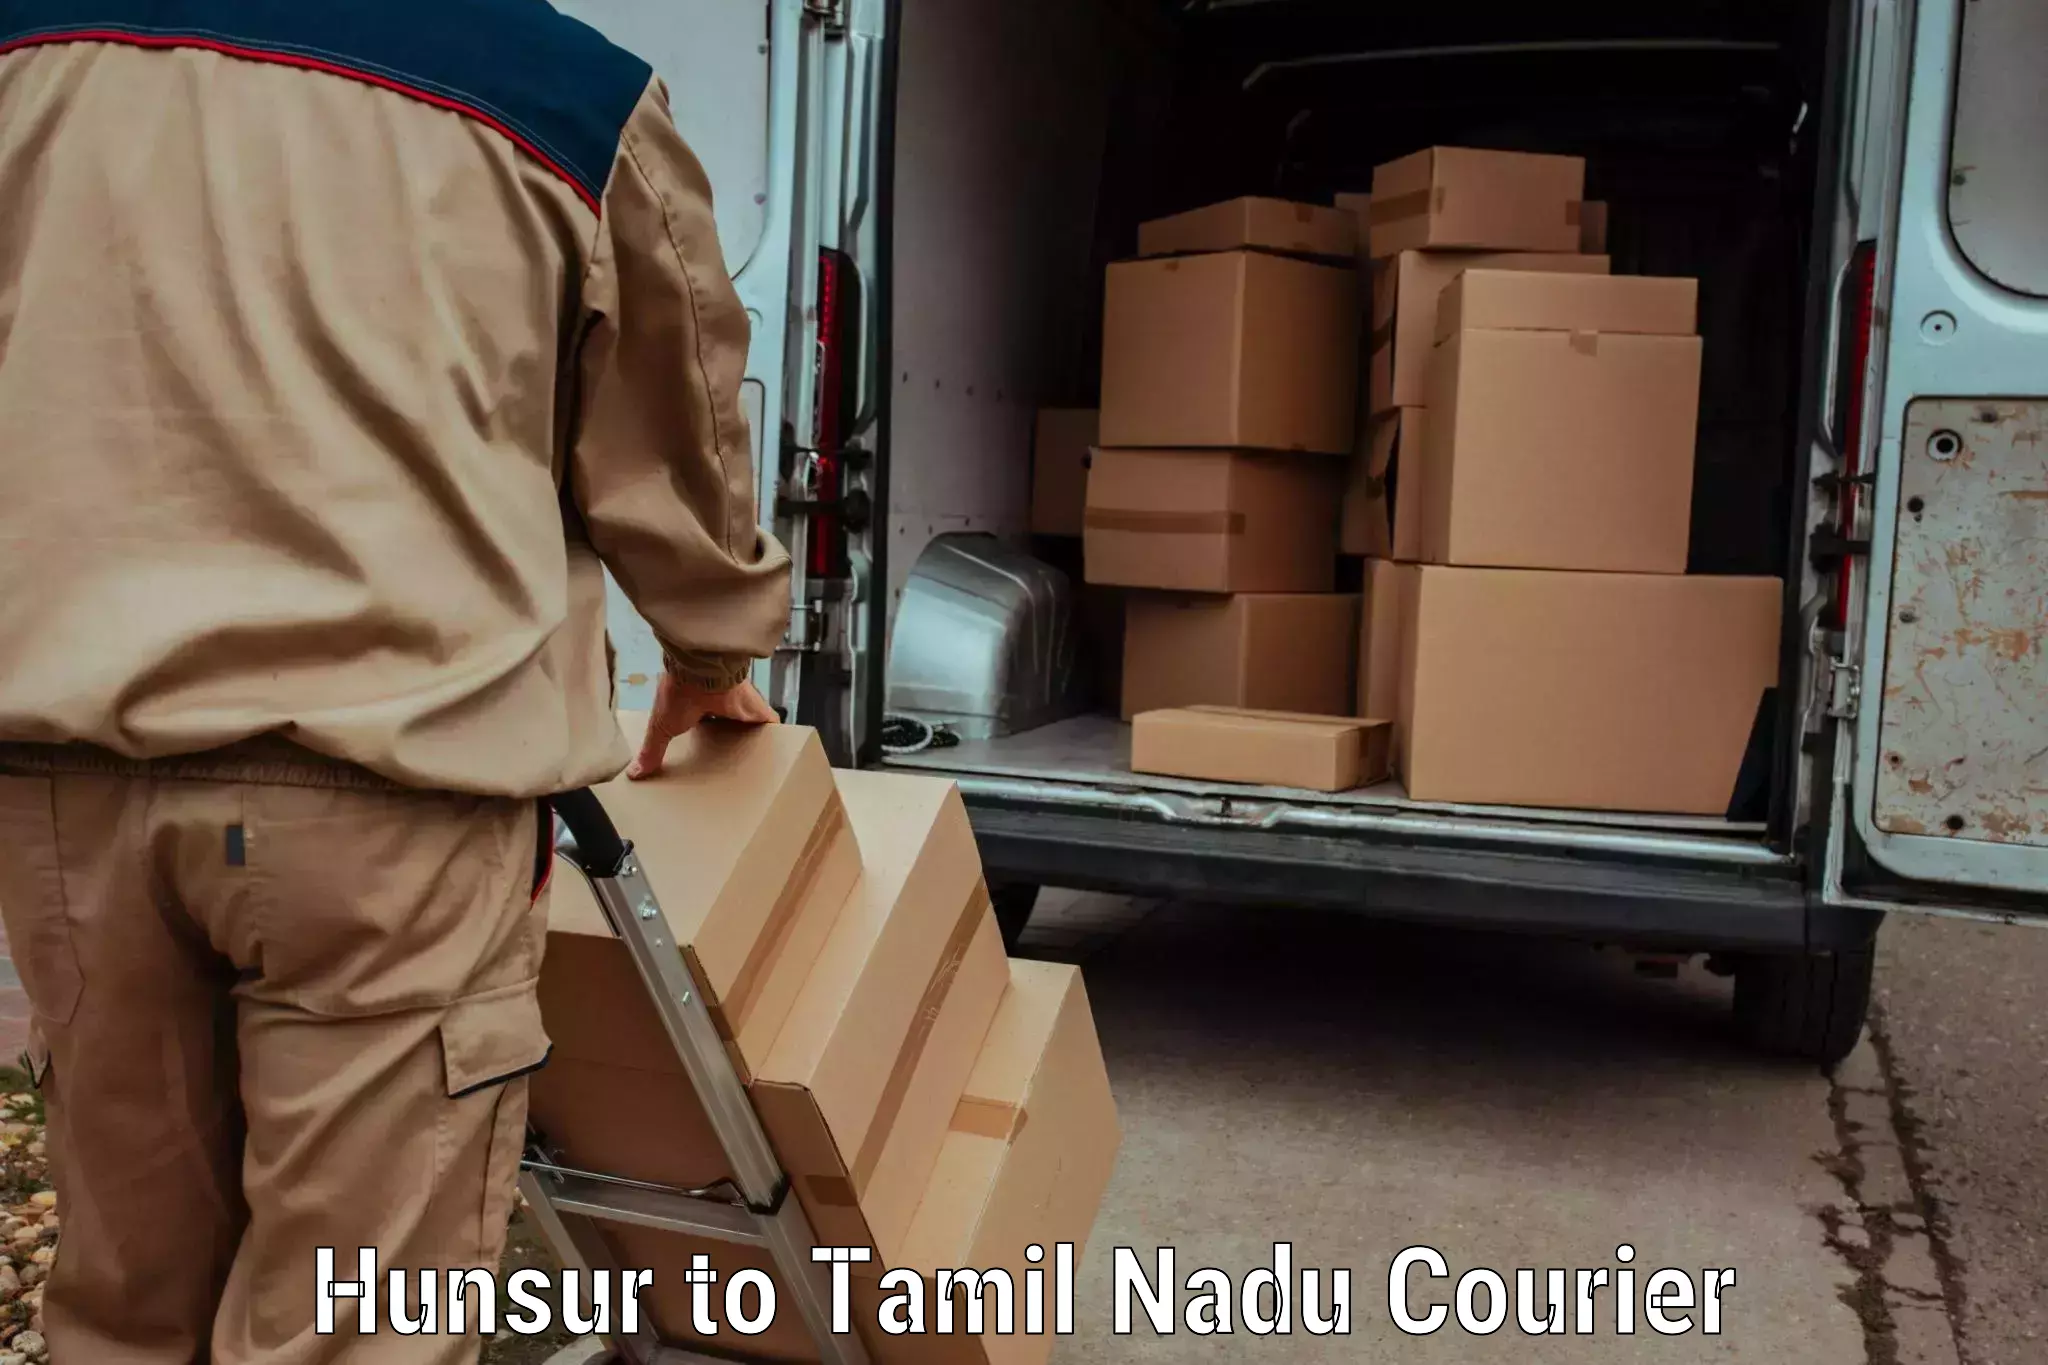 Courier service comparison Hunsur to Ambattur